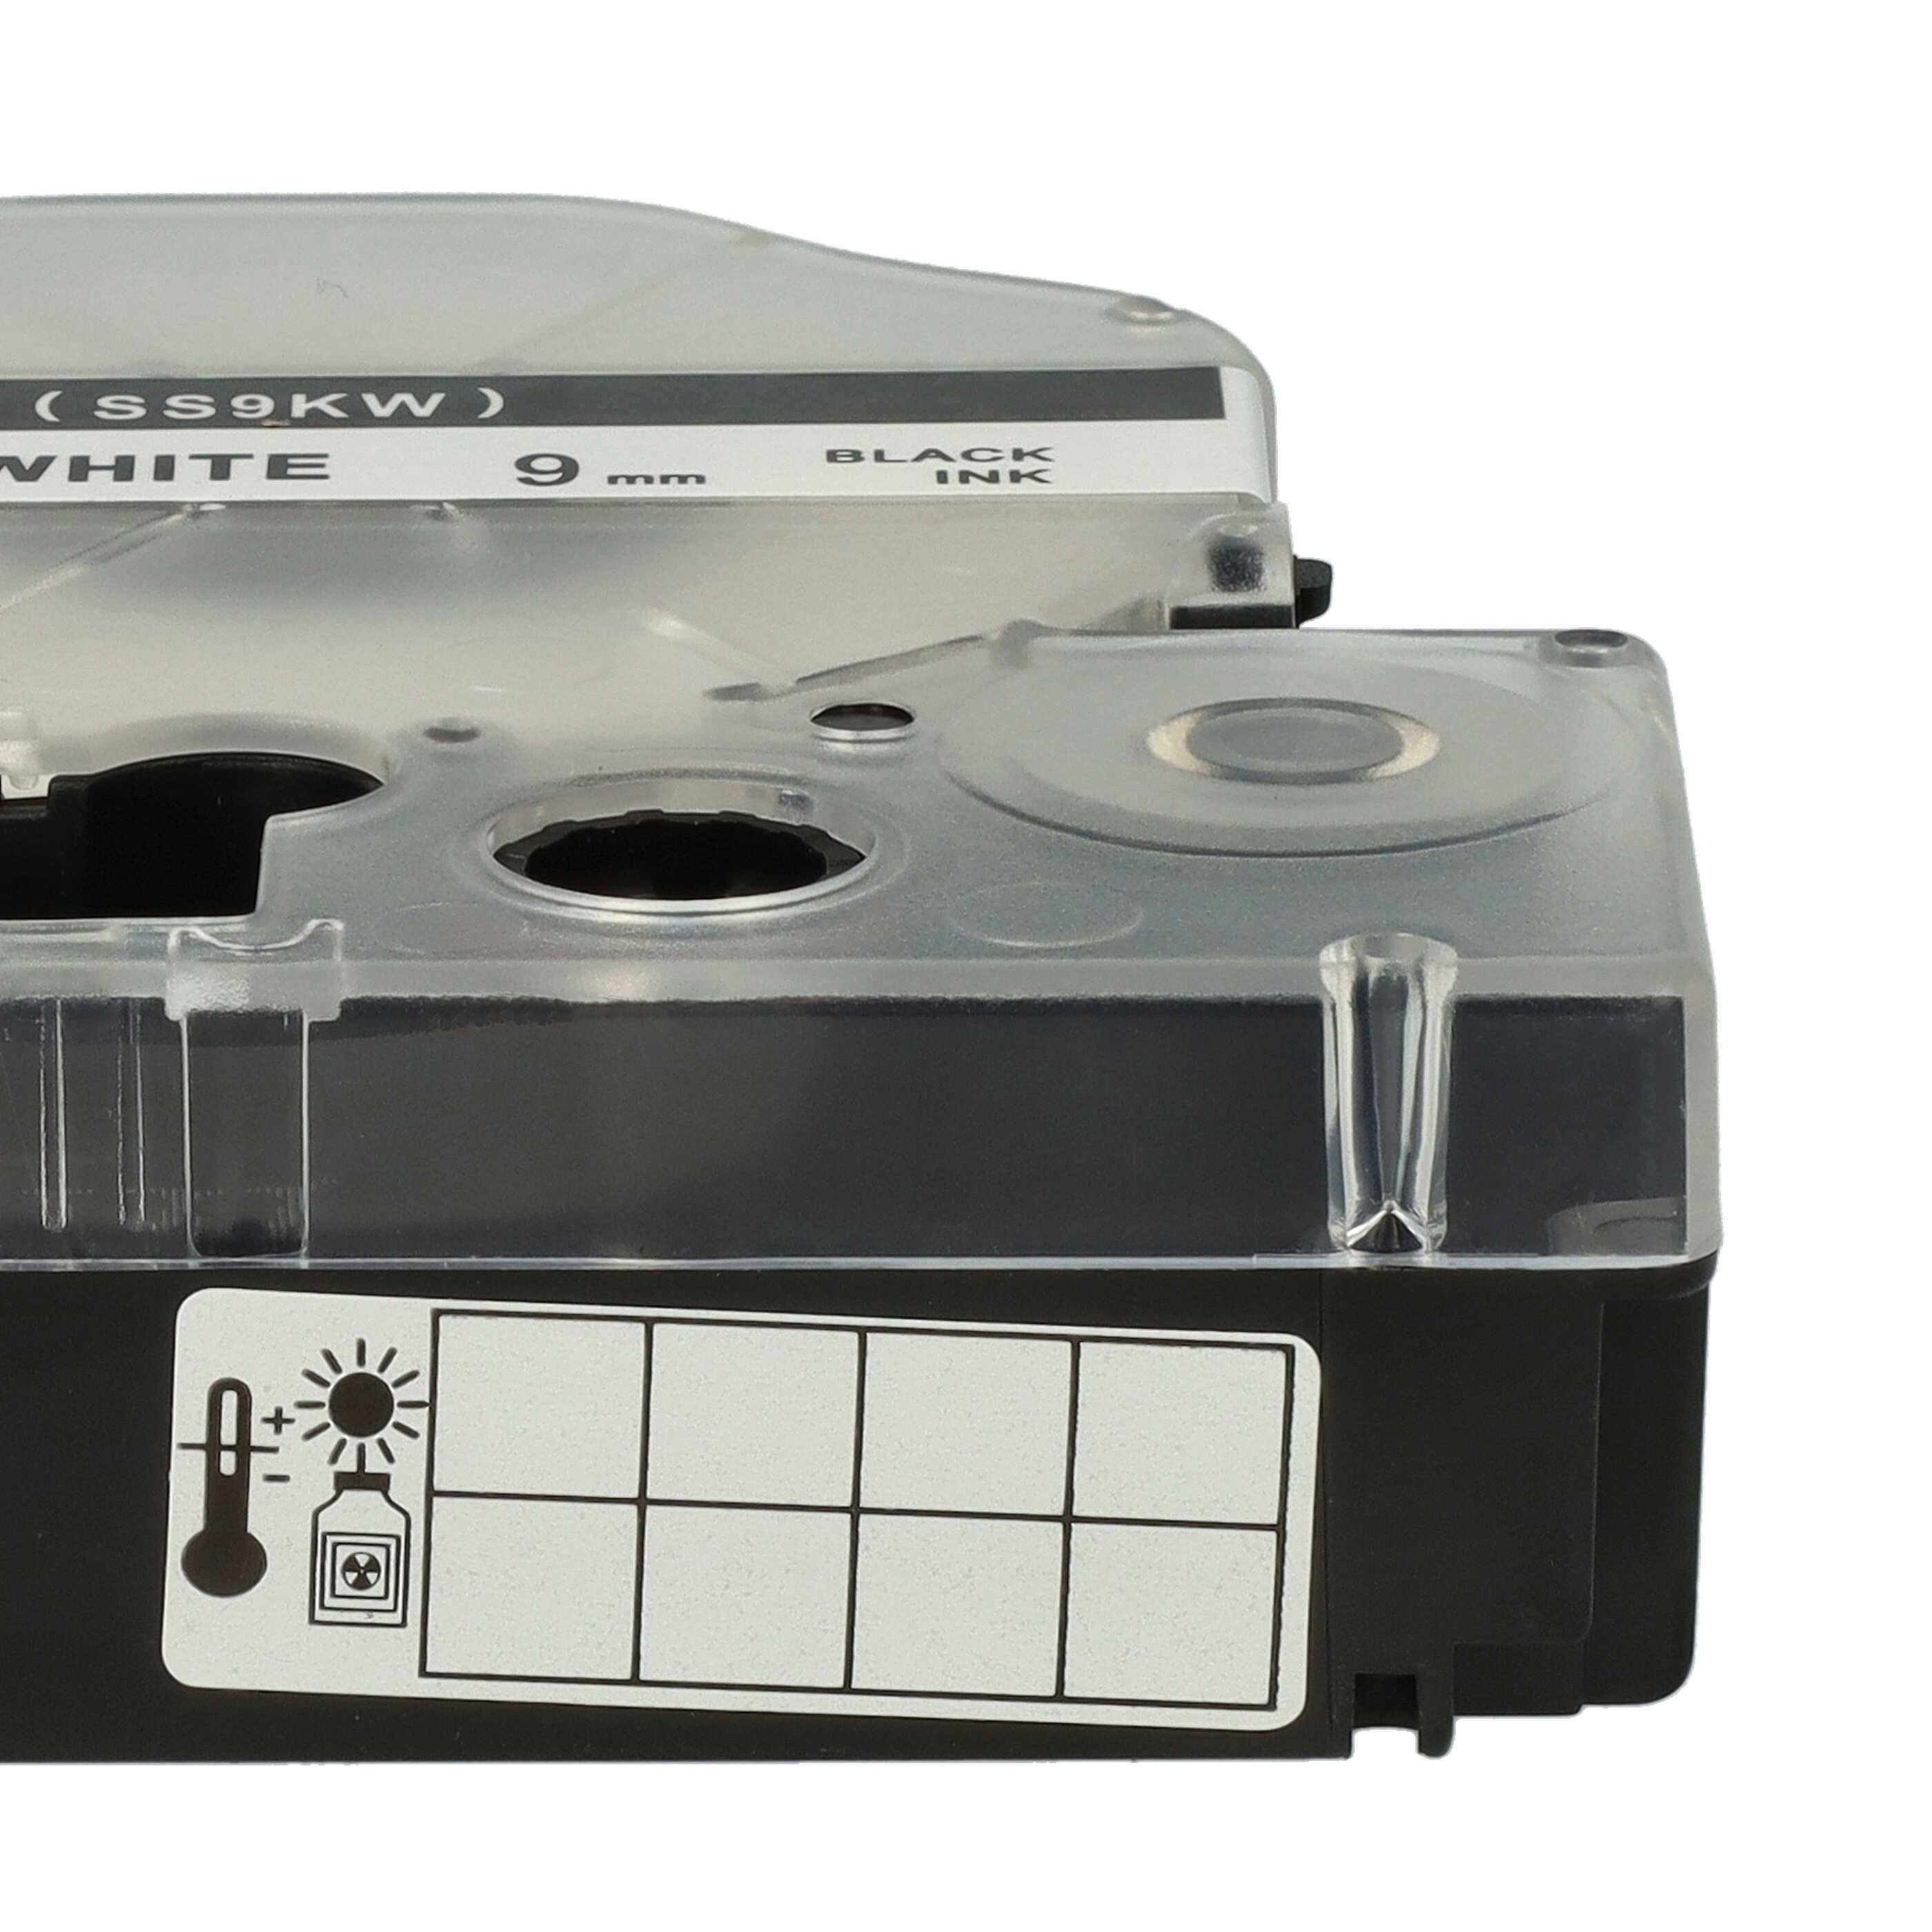 3x Cassetta nastro sostituisce Epson SS9KW, LC-3WBN per etichettatrice Epson 9mm nero su bianco